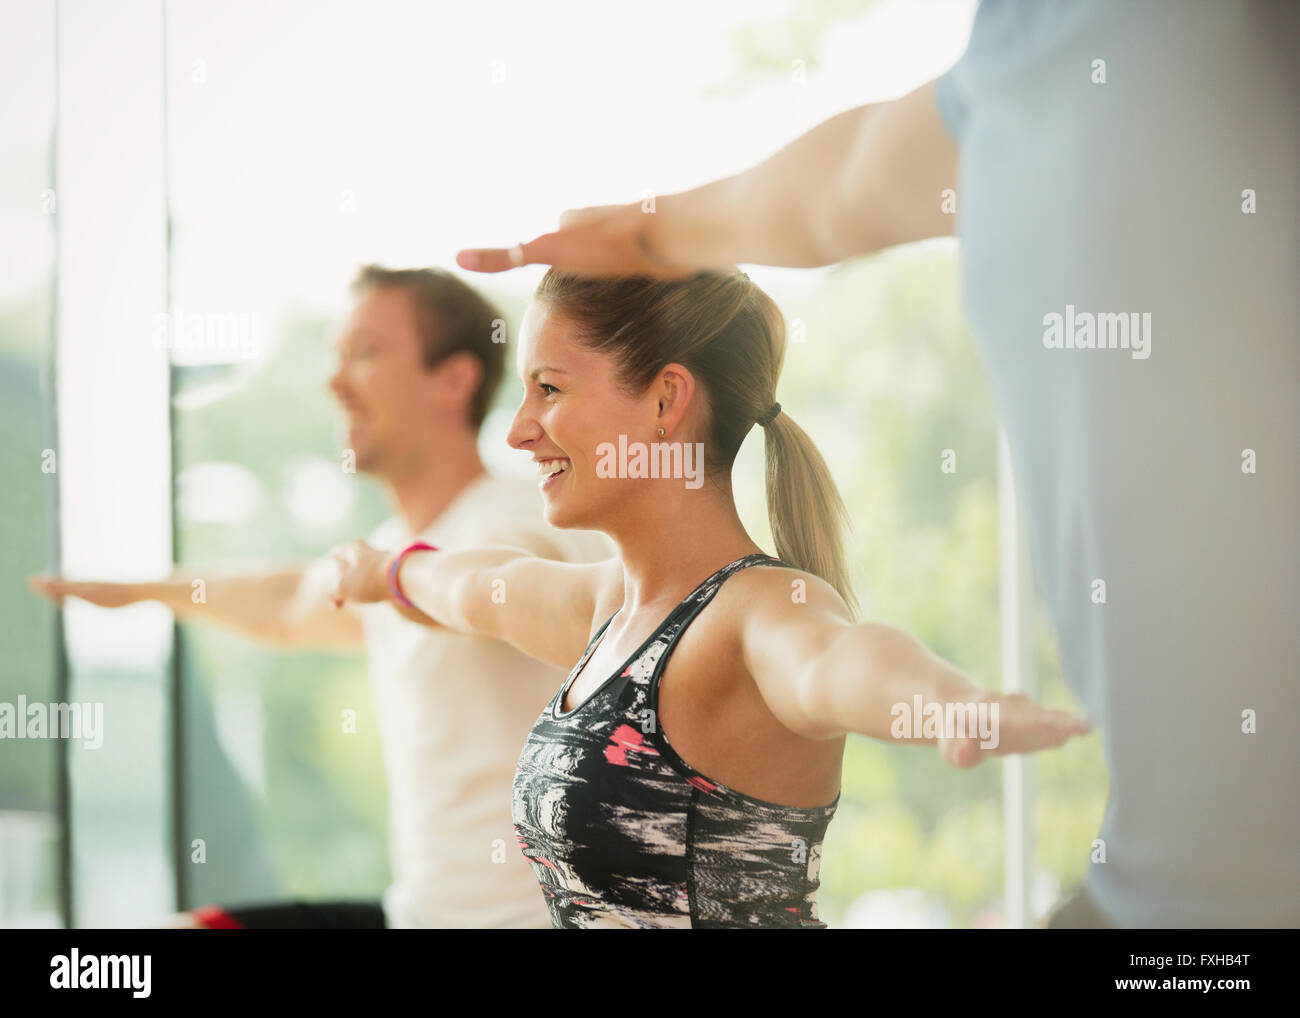 Mujer sonriente con los brazos extendidos en clase de aeróbic Foto de stock